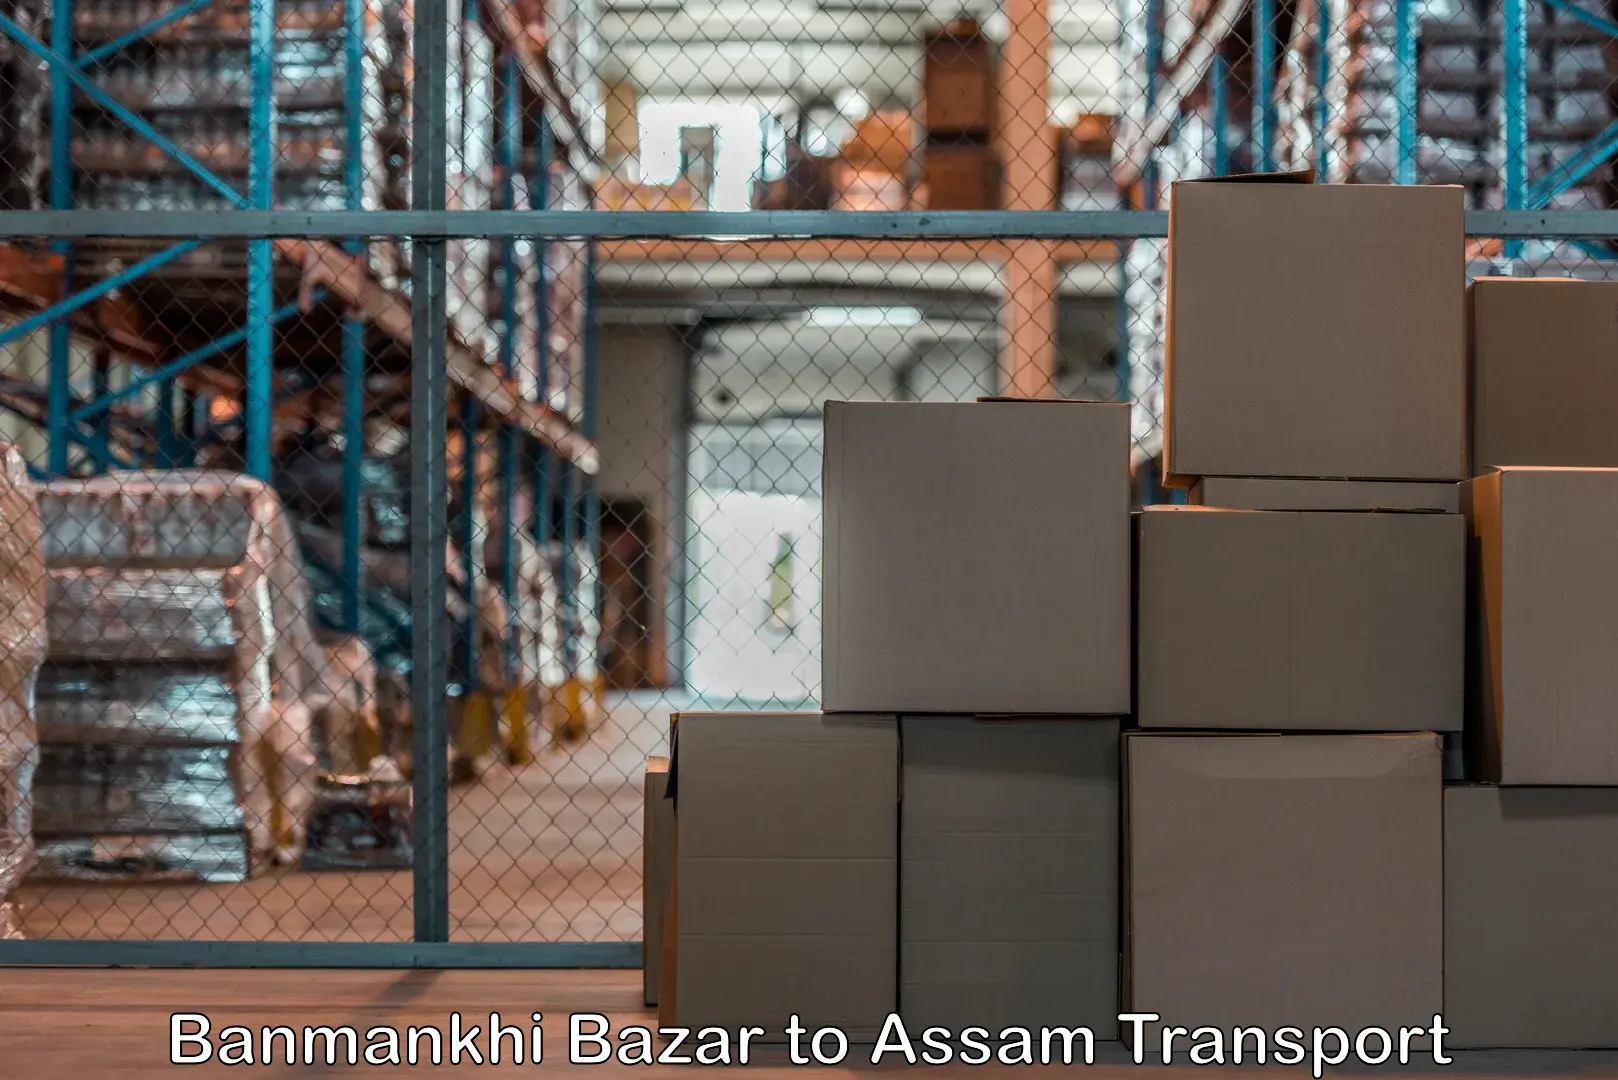 Cargo transport services Banmankhi Bazar to Mazbat